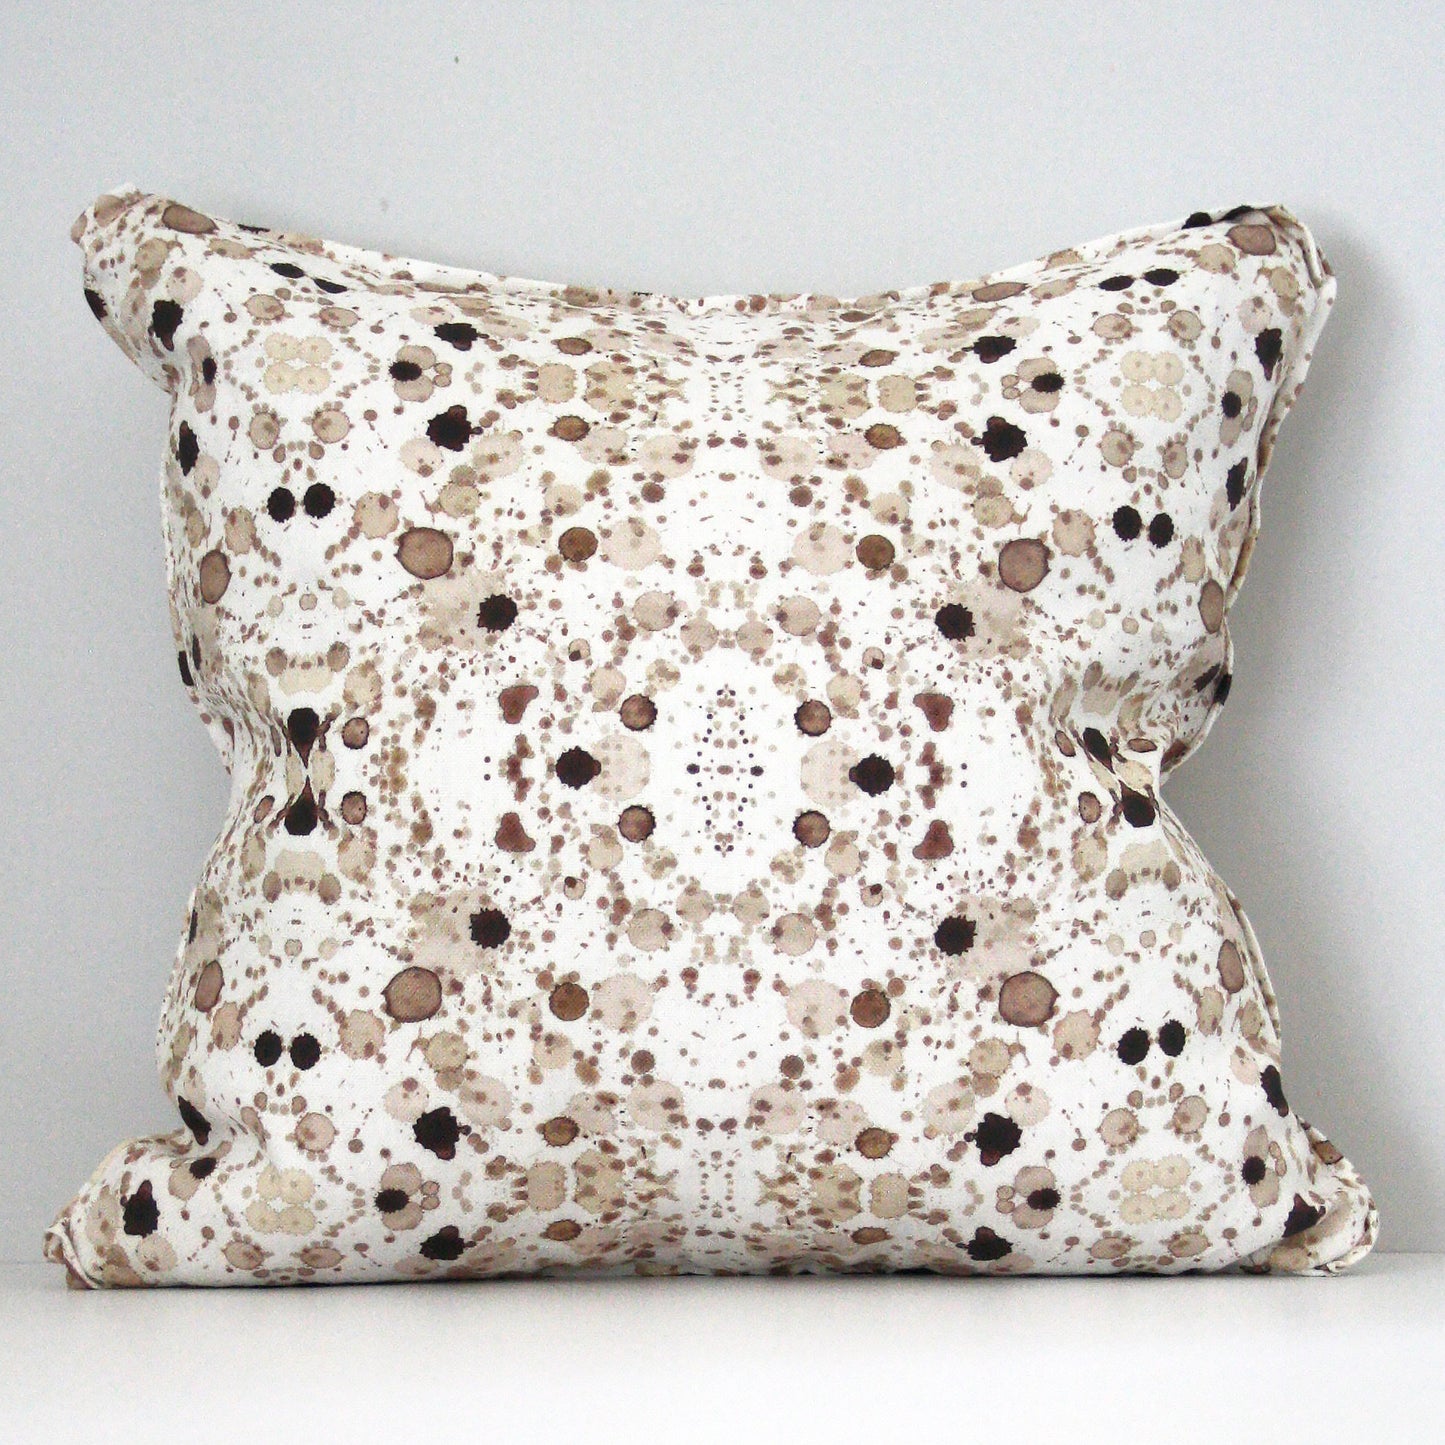 Splatter Pillow in Sepia